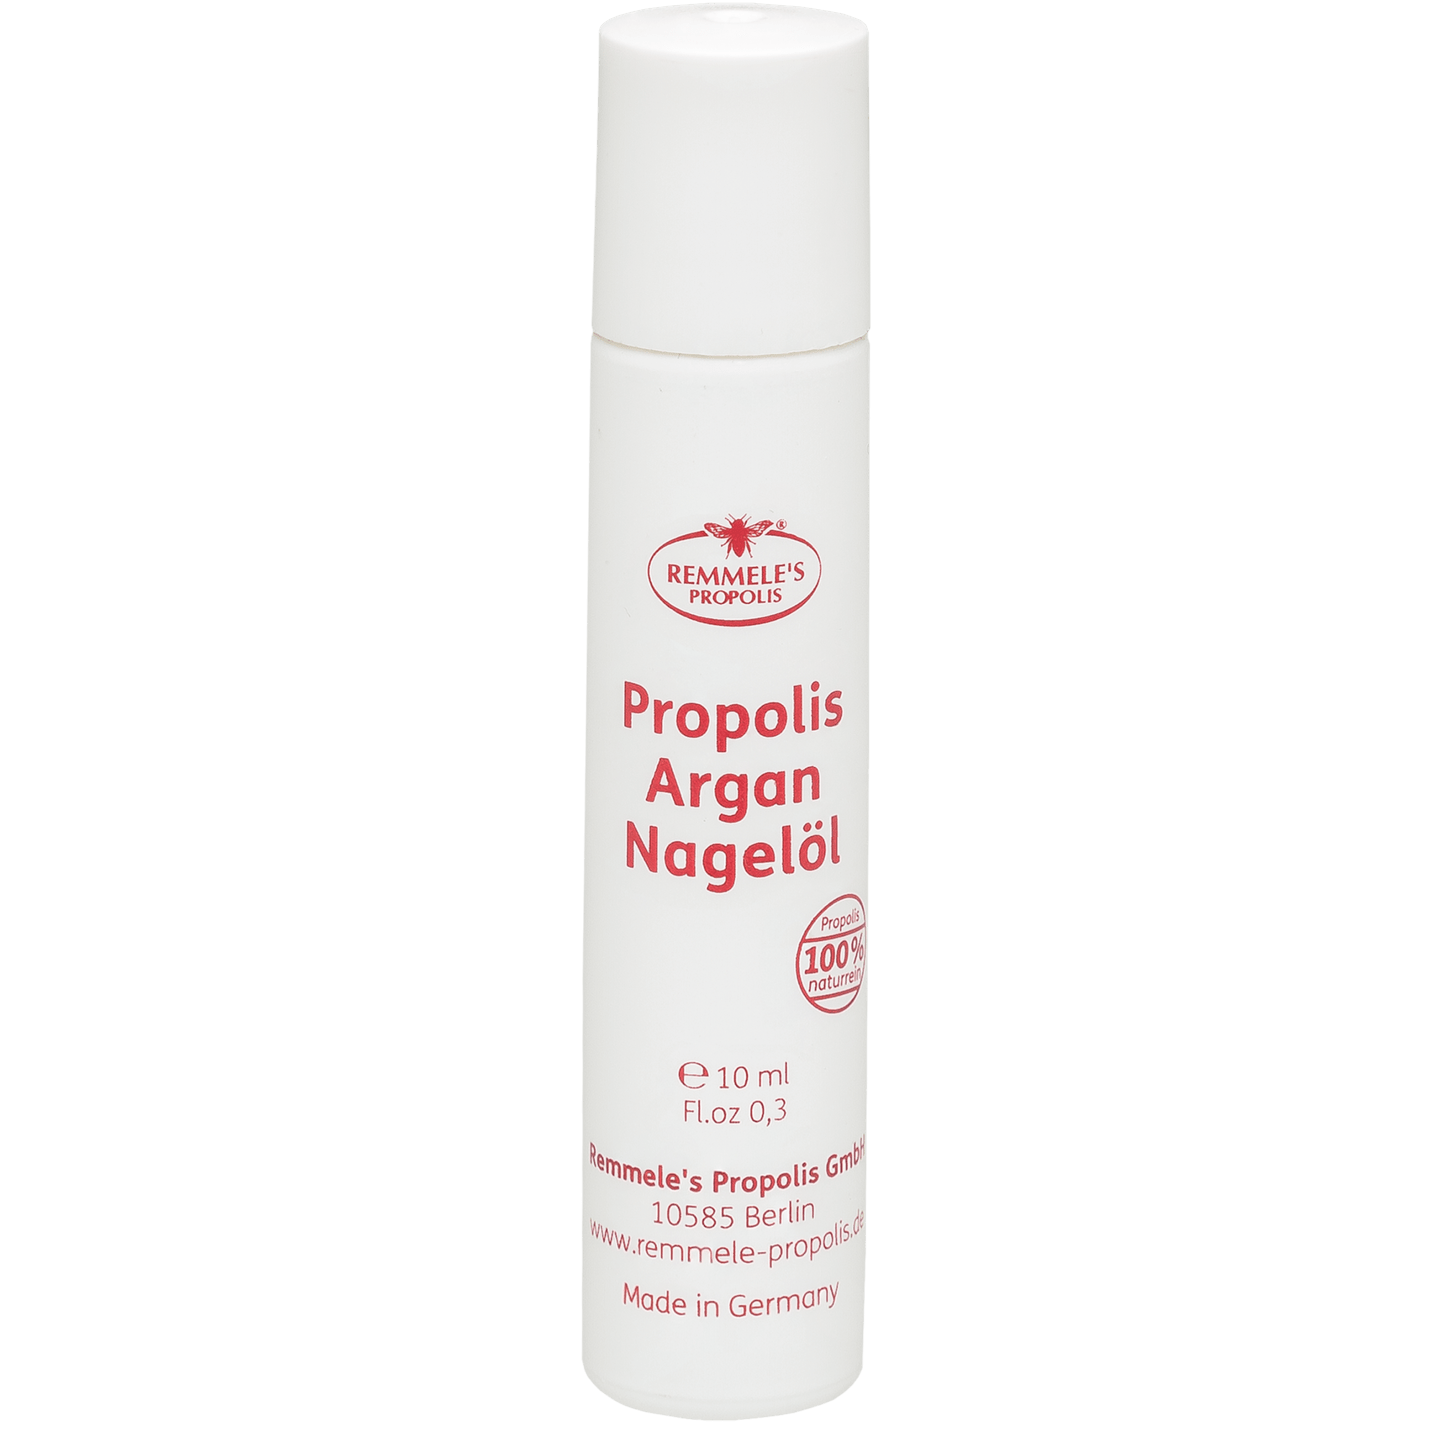 Remmele's Propolis - Propolis Argan Nagelöl, 10 ml